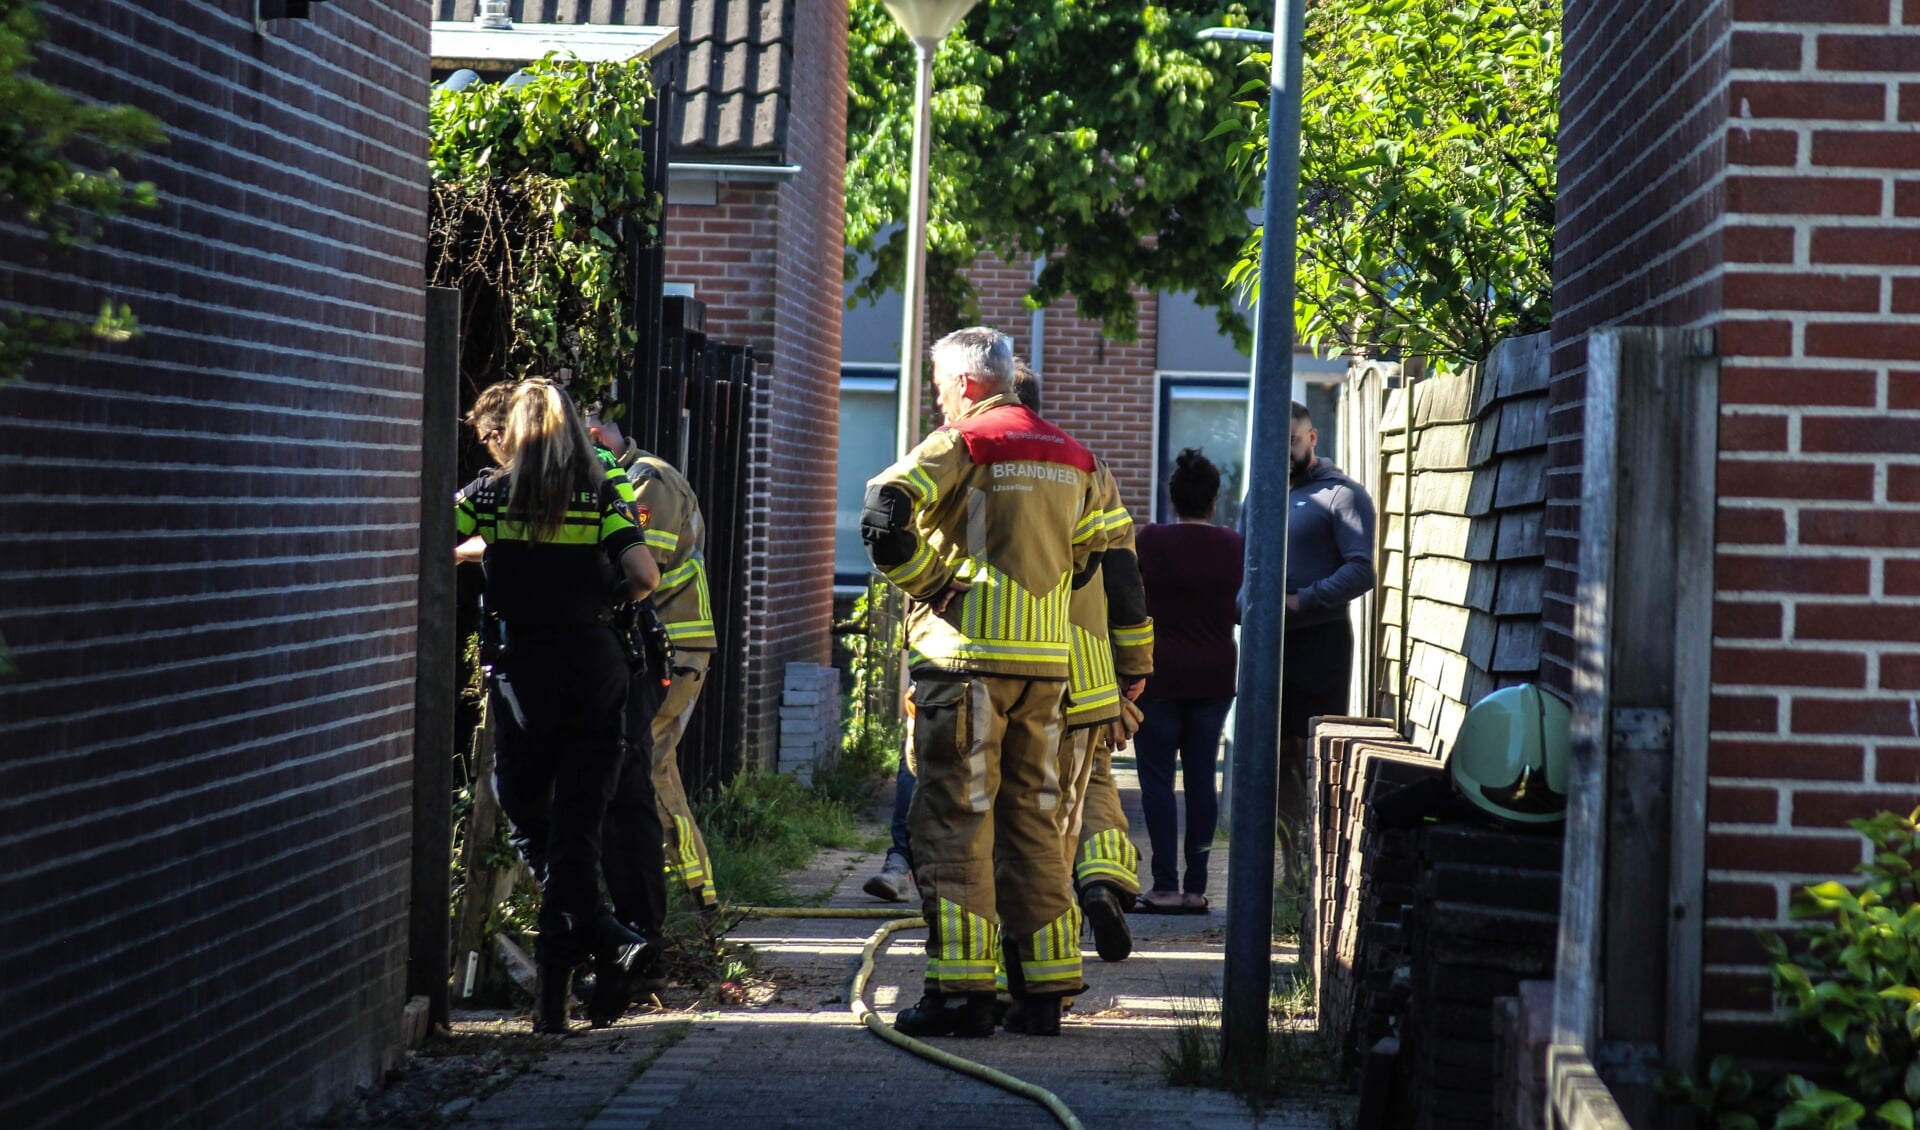 Kampen - Op dinsdag  1 juni rond 9 uur was brand ontstaan op de Burgemeester Oldenhoflaan in Kampen. Een heg in een tuin stond in brand. Het betrof een kleine brand. Brandweerlieden hebben de brand geblust. De oorzaak van de brand is niet bekend.